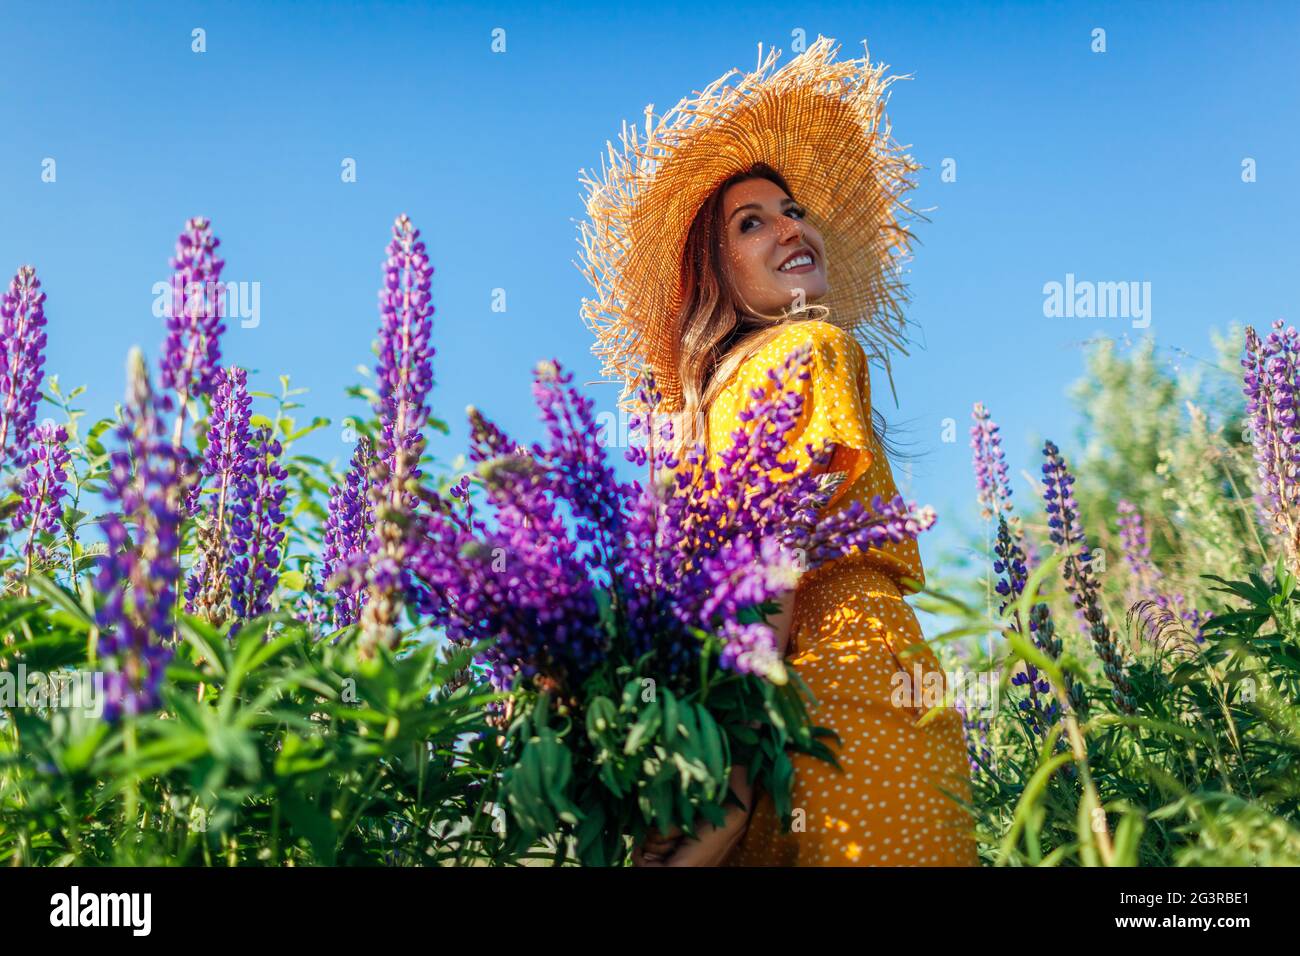 Portrait de la jeune femme tenant un bouquet de fleurs lupin pourpres marchant dans le champ d'été. Fille élégante portant un chapeau de paille portant des vêtements jaunes Banque D'Images